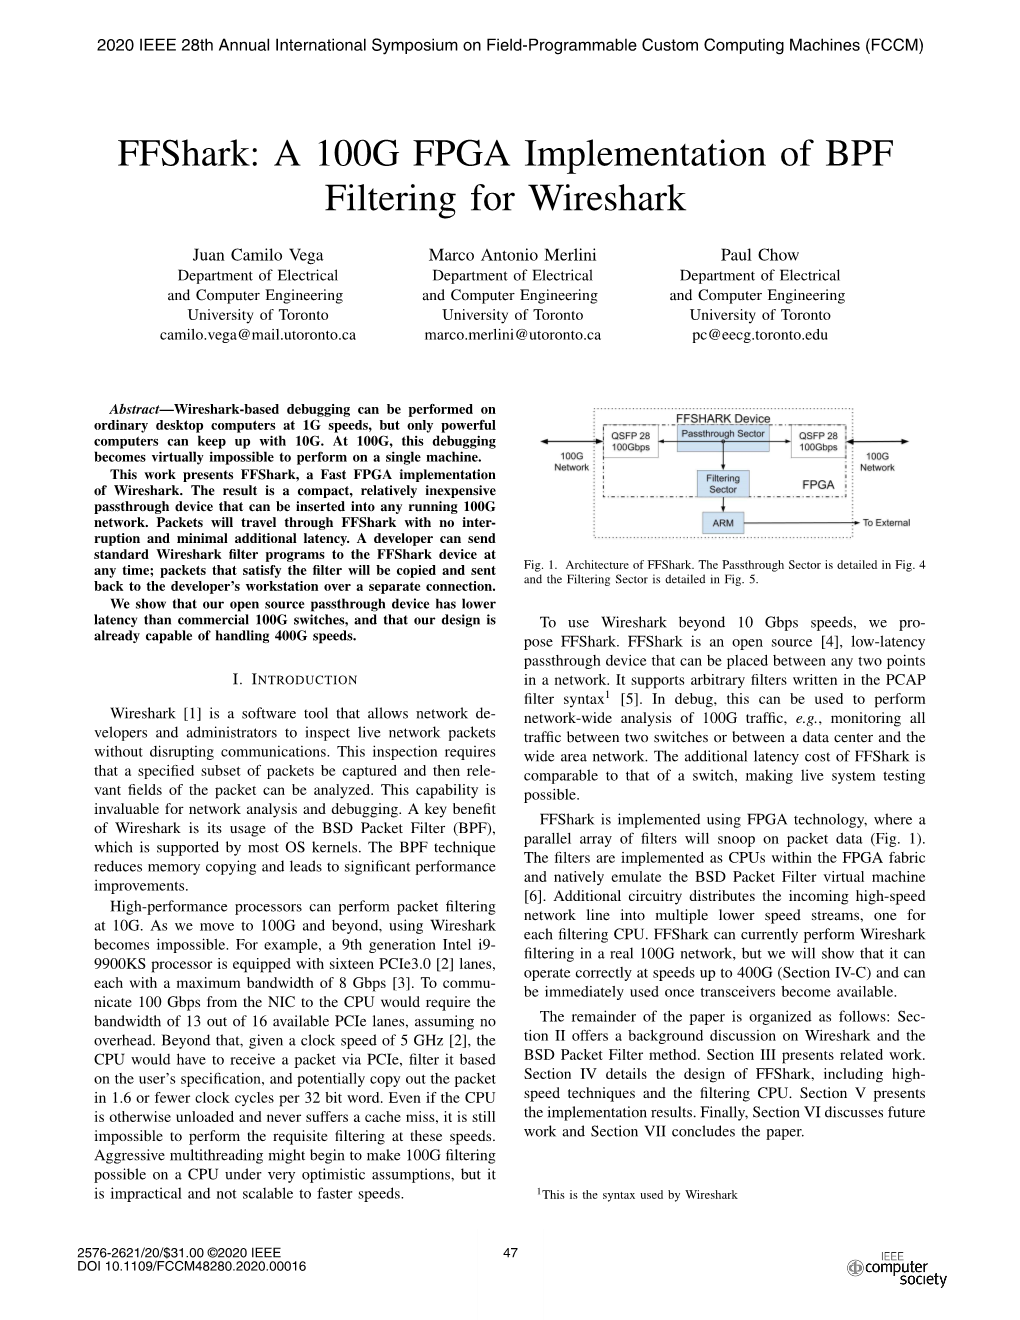 Ffshark: a 100G FPGA Implementation of BPF Filtering for Wireshark